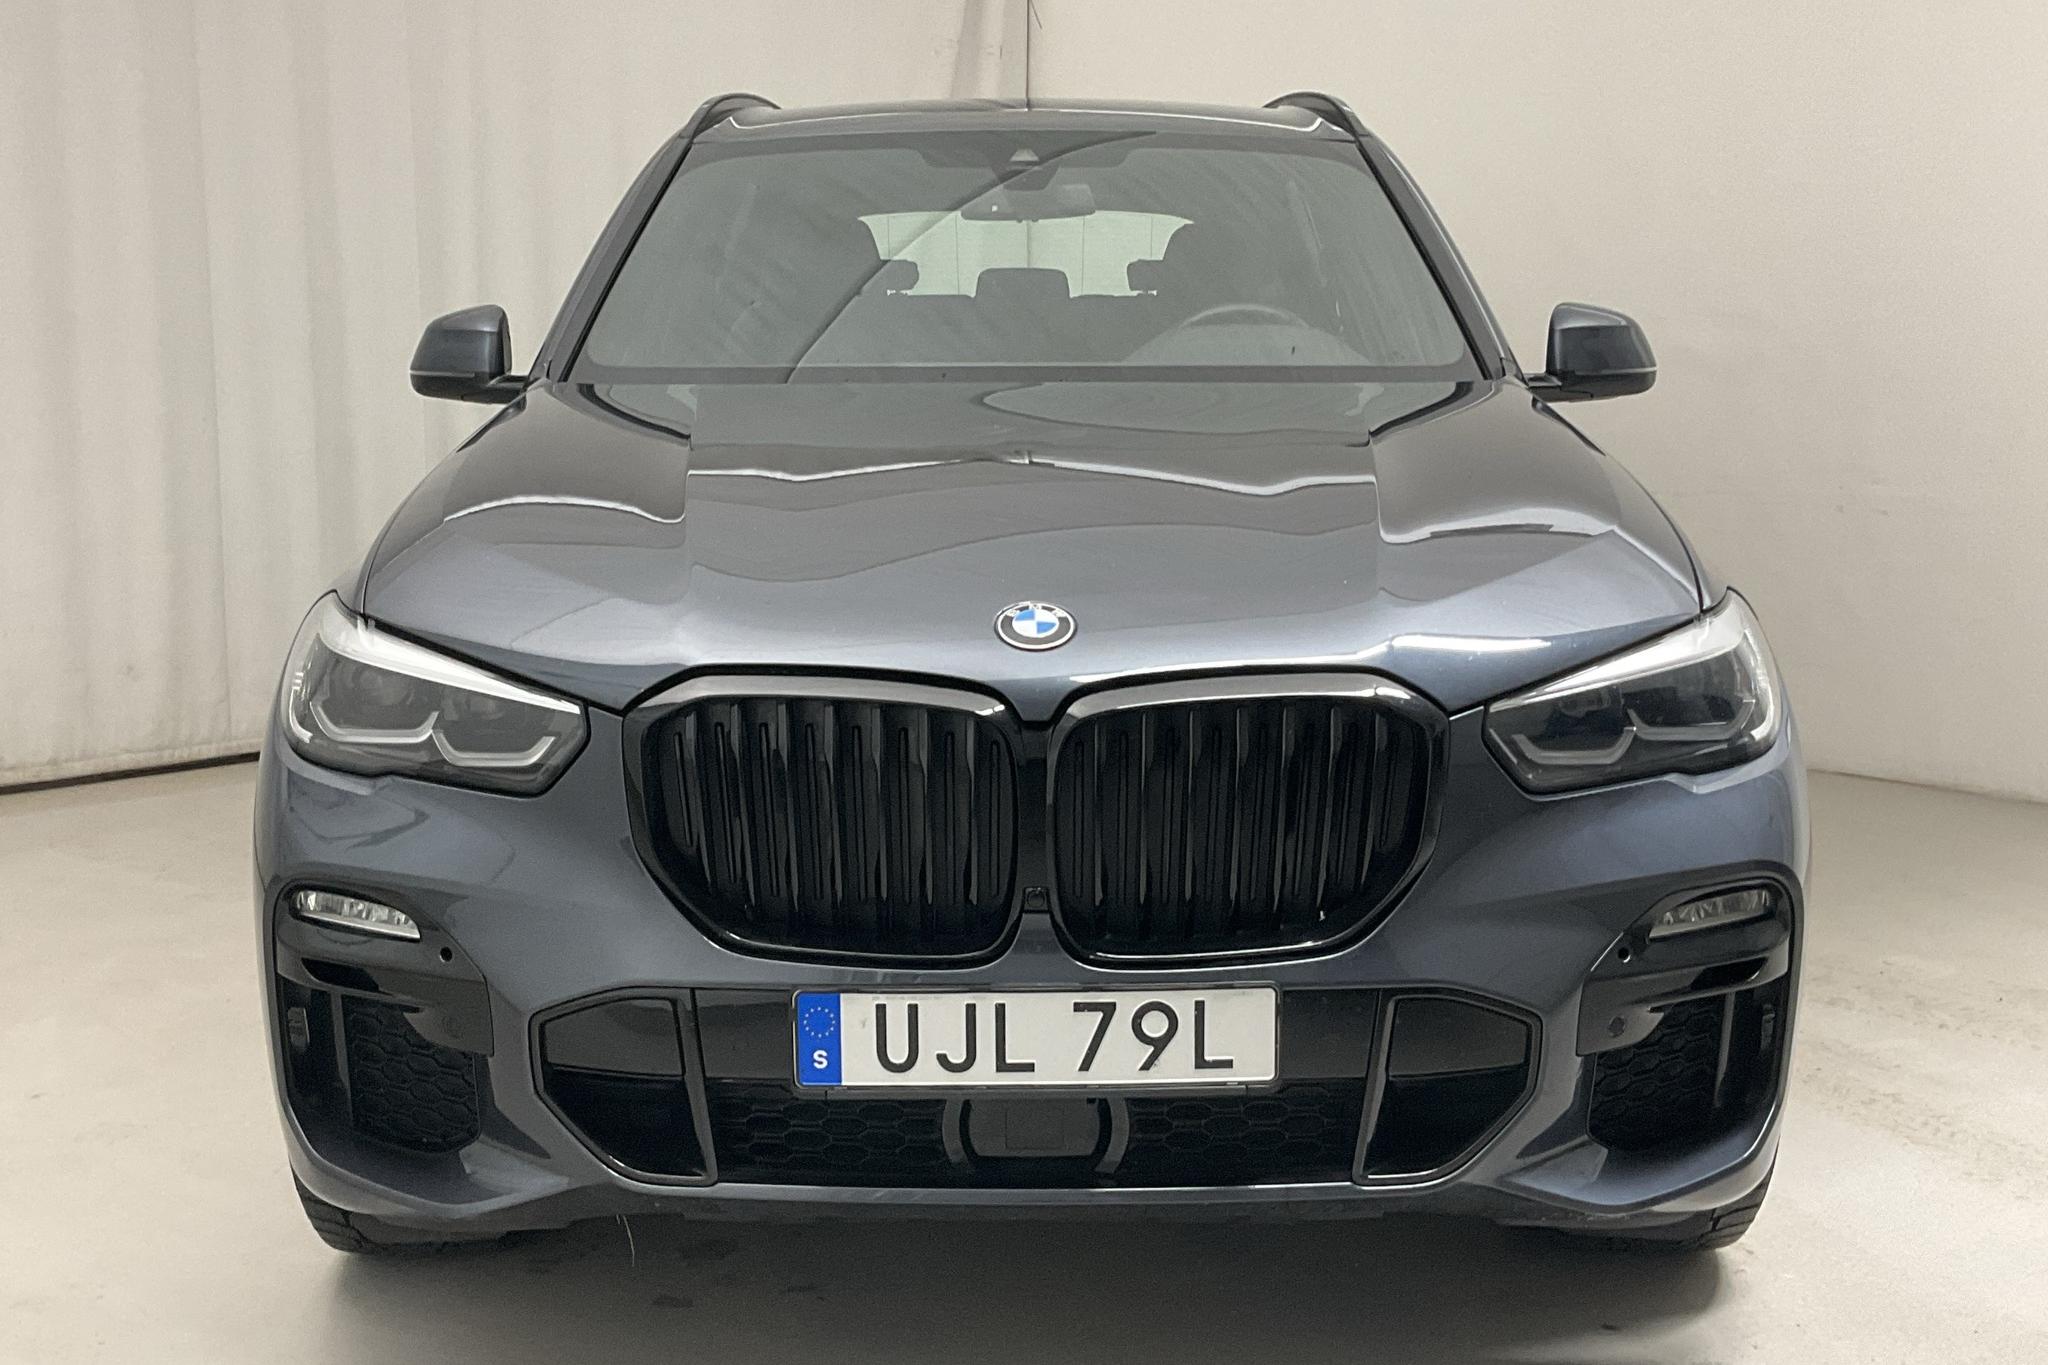 BMW X5 xDrive45e, G05 (394hk) - 93 620 km - Automatic - gray - 2020